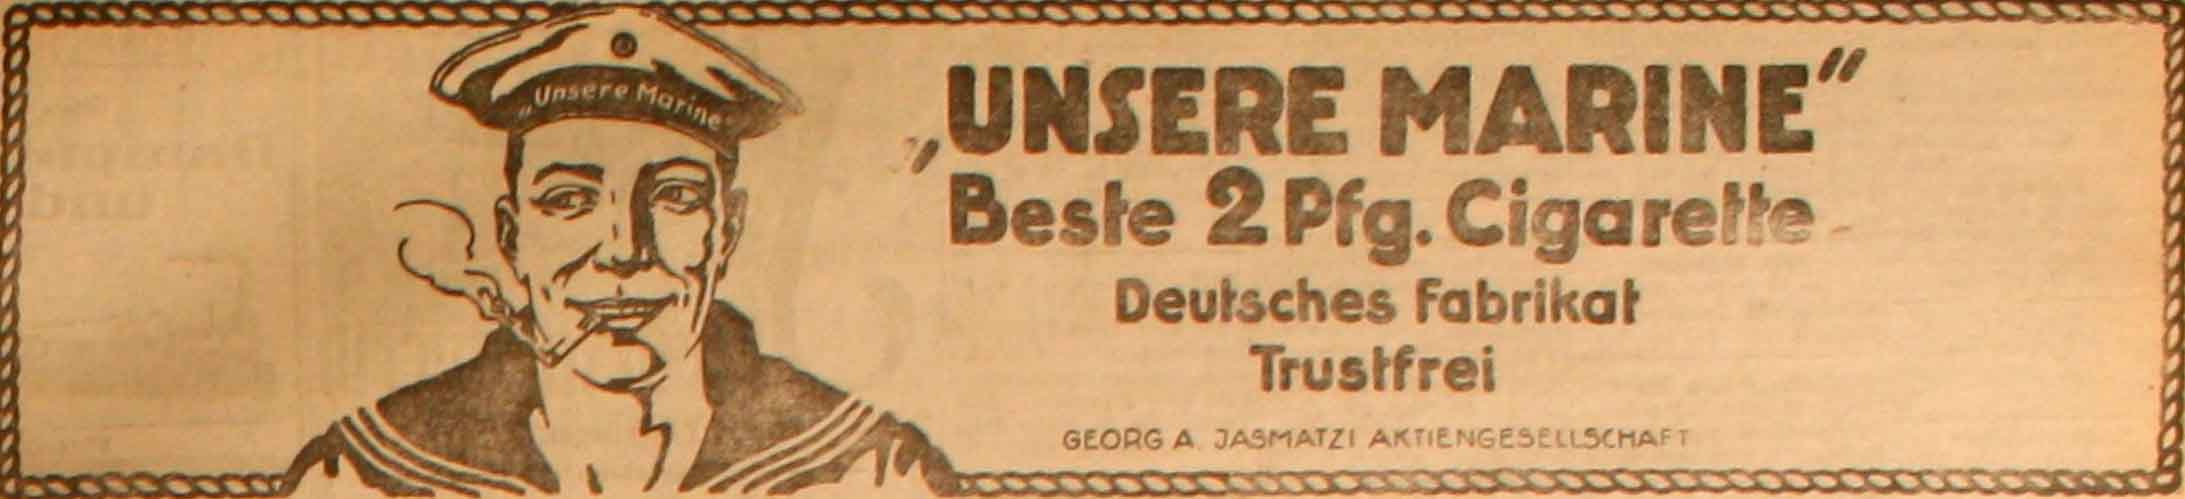 Anzeige in der Deutschen Reichs-Zeitung vom 8. August 1915